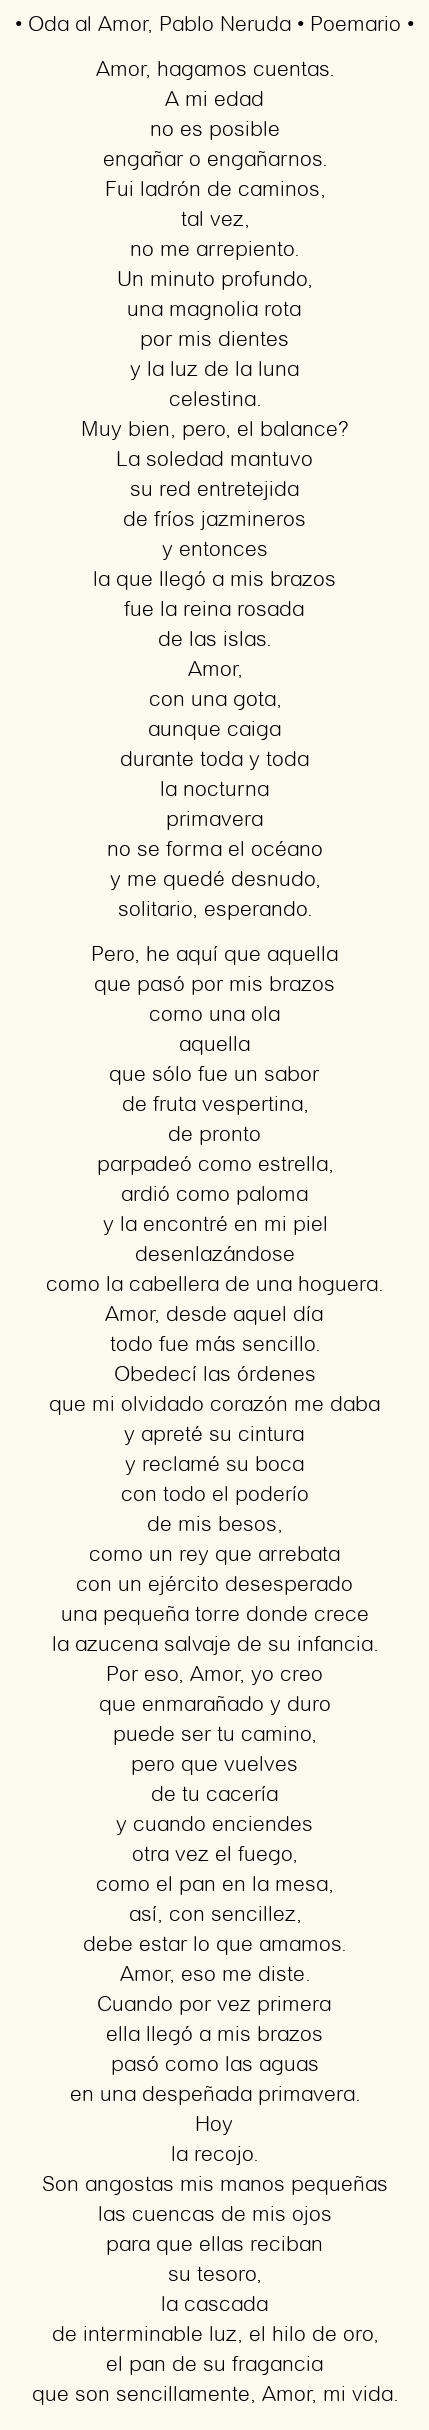 Imagen con el poema Oda al Amor, por Pablo Neruda